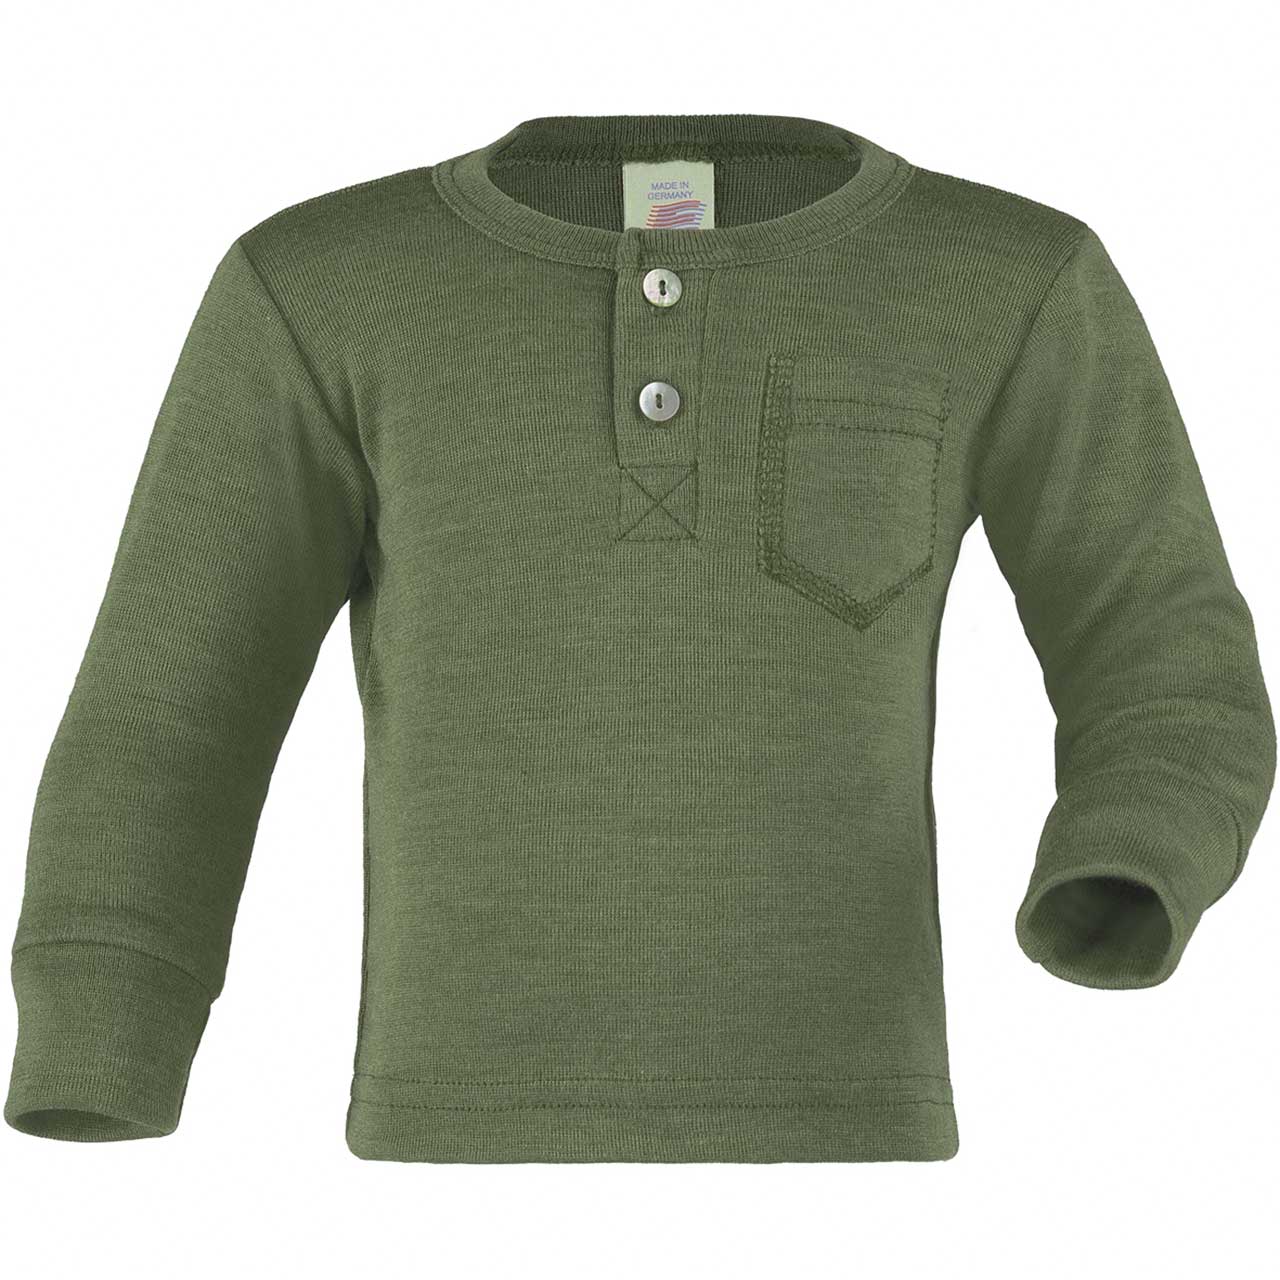 Olivgrünes Baby-Shirt mit Knopfleiste aus Wolle/Seide, verschiedene Größen